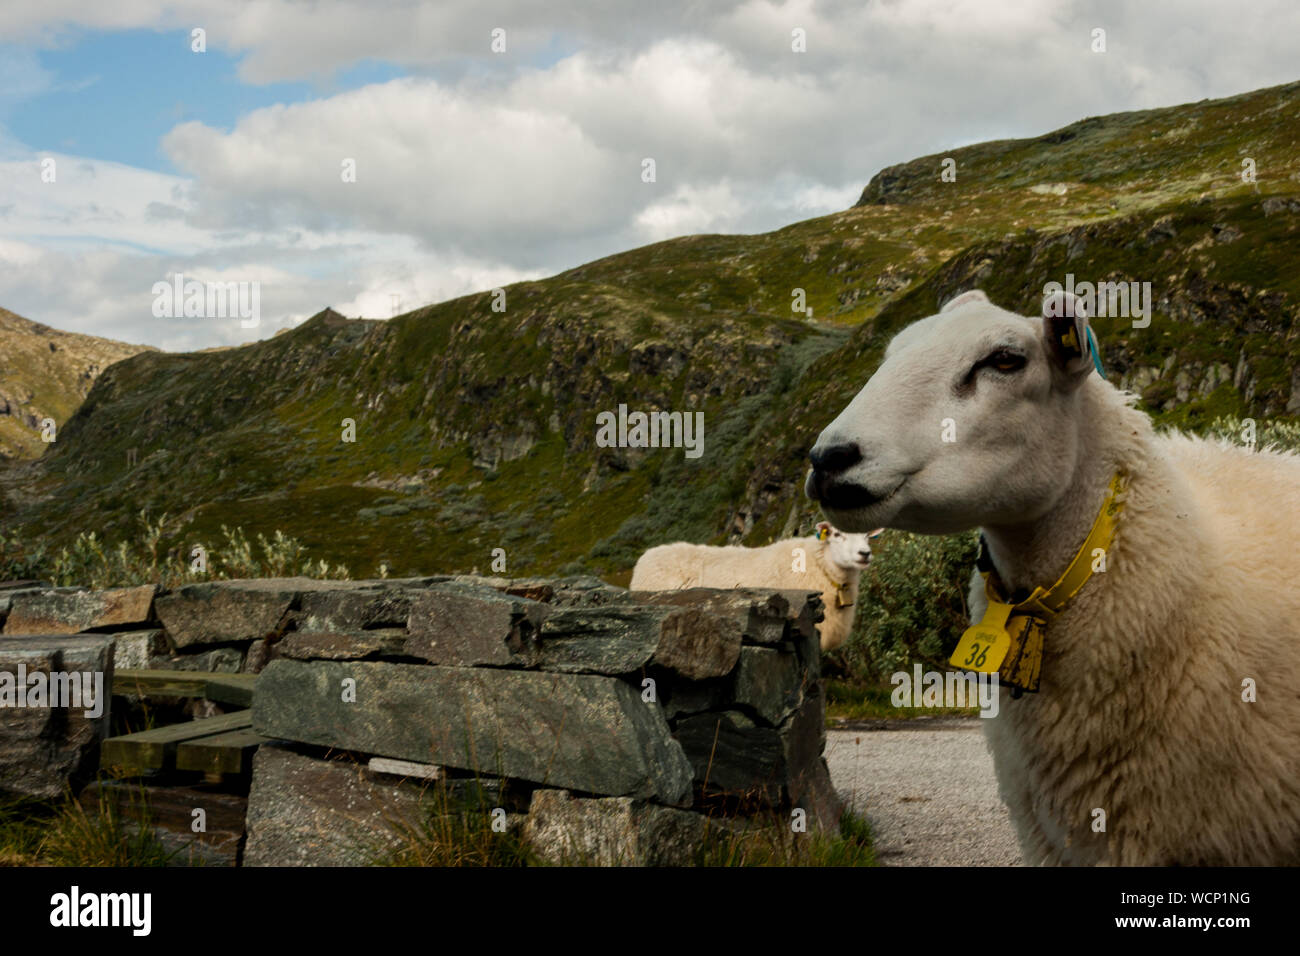 Moutons dans le parc national de Jotunheimen, Norvège Scandinavie Banque D'Images